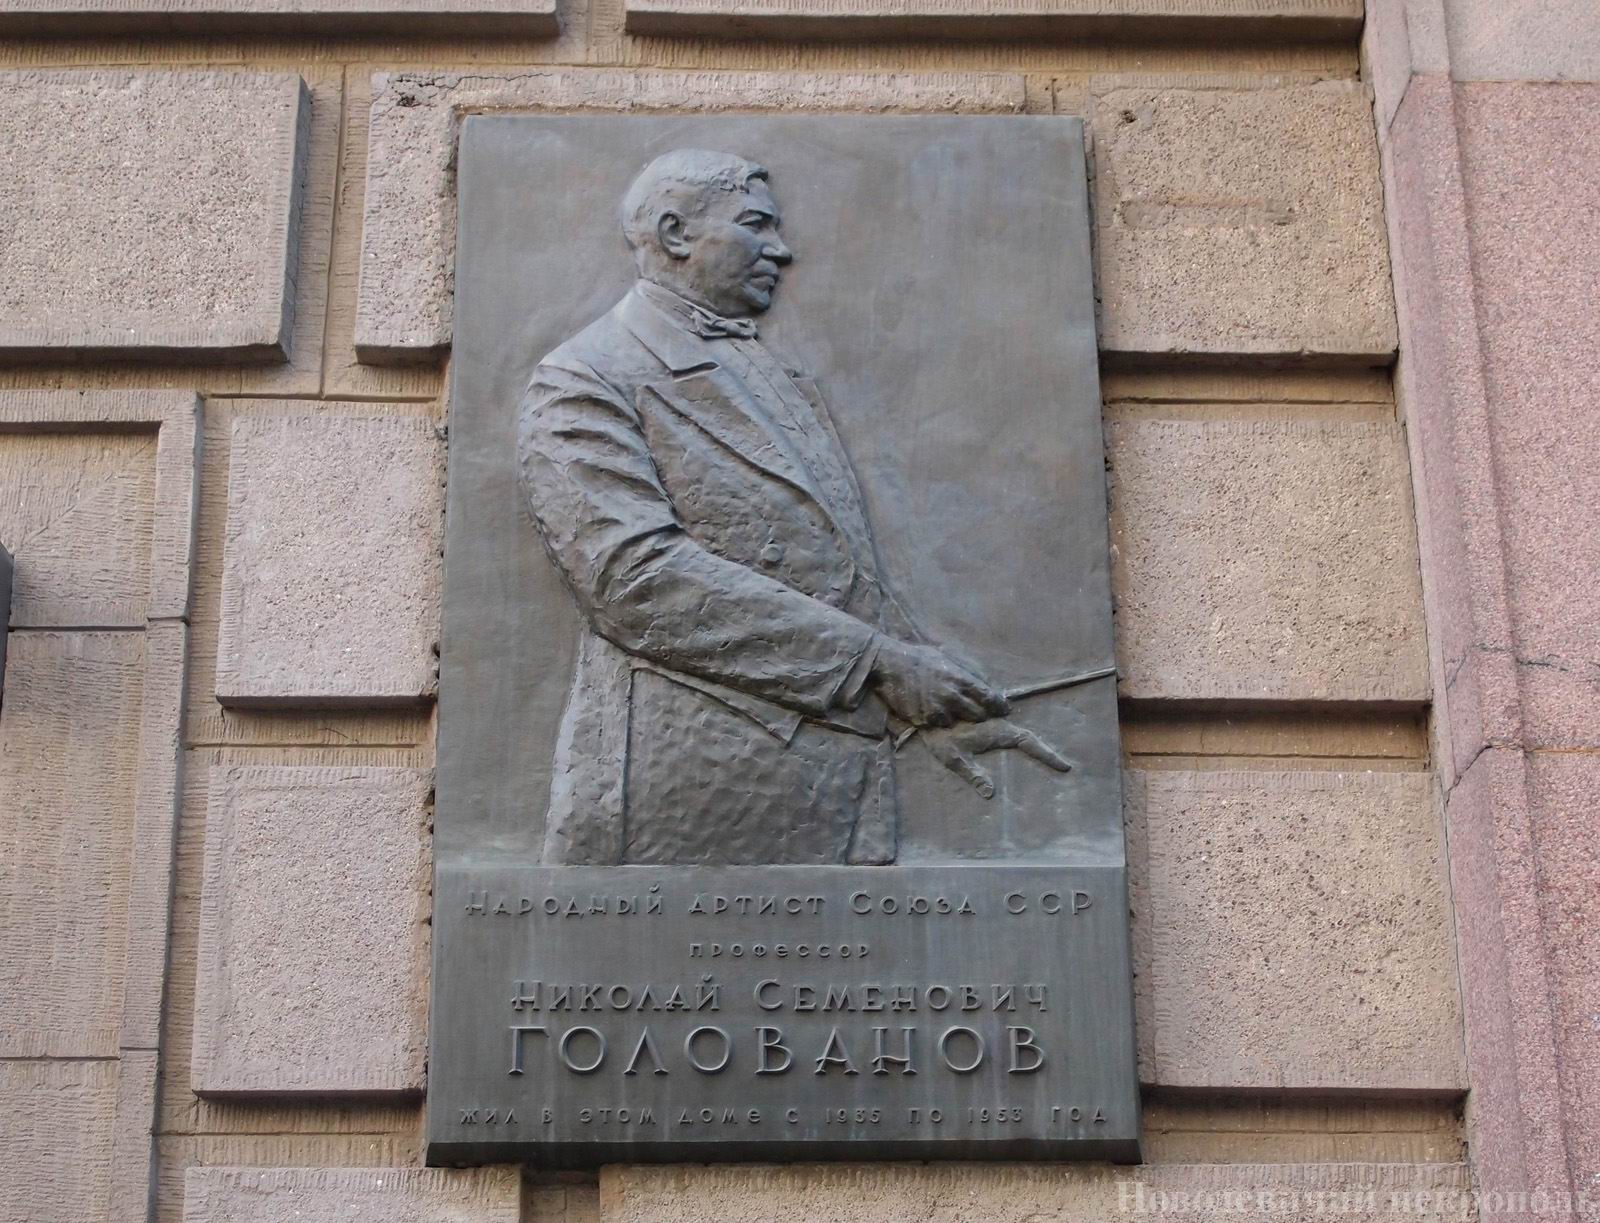 Мемориальная доска Голованову Н.С. (1891—1953), ск. Л.И.Дубиновский, в Брюсовом переулке, дом 7, открыта 13.6.1961.